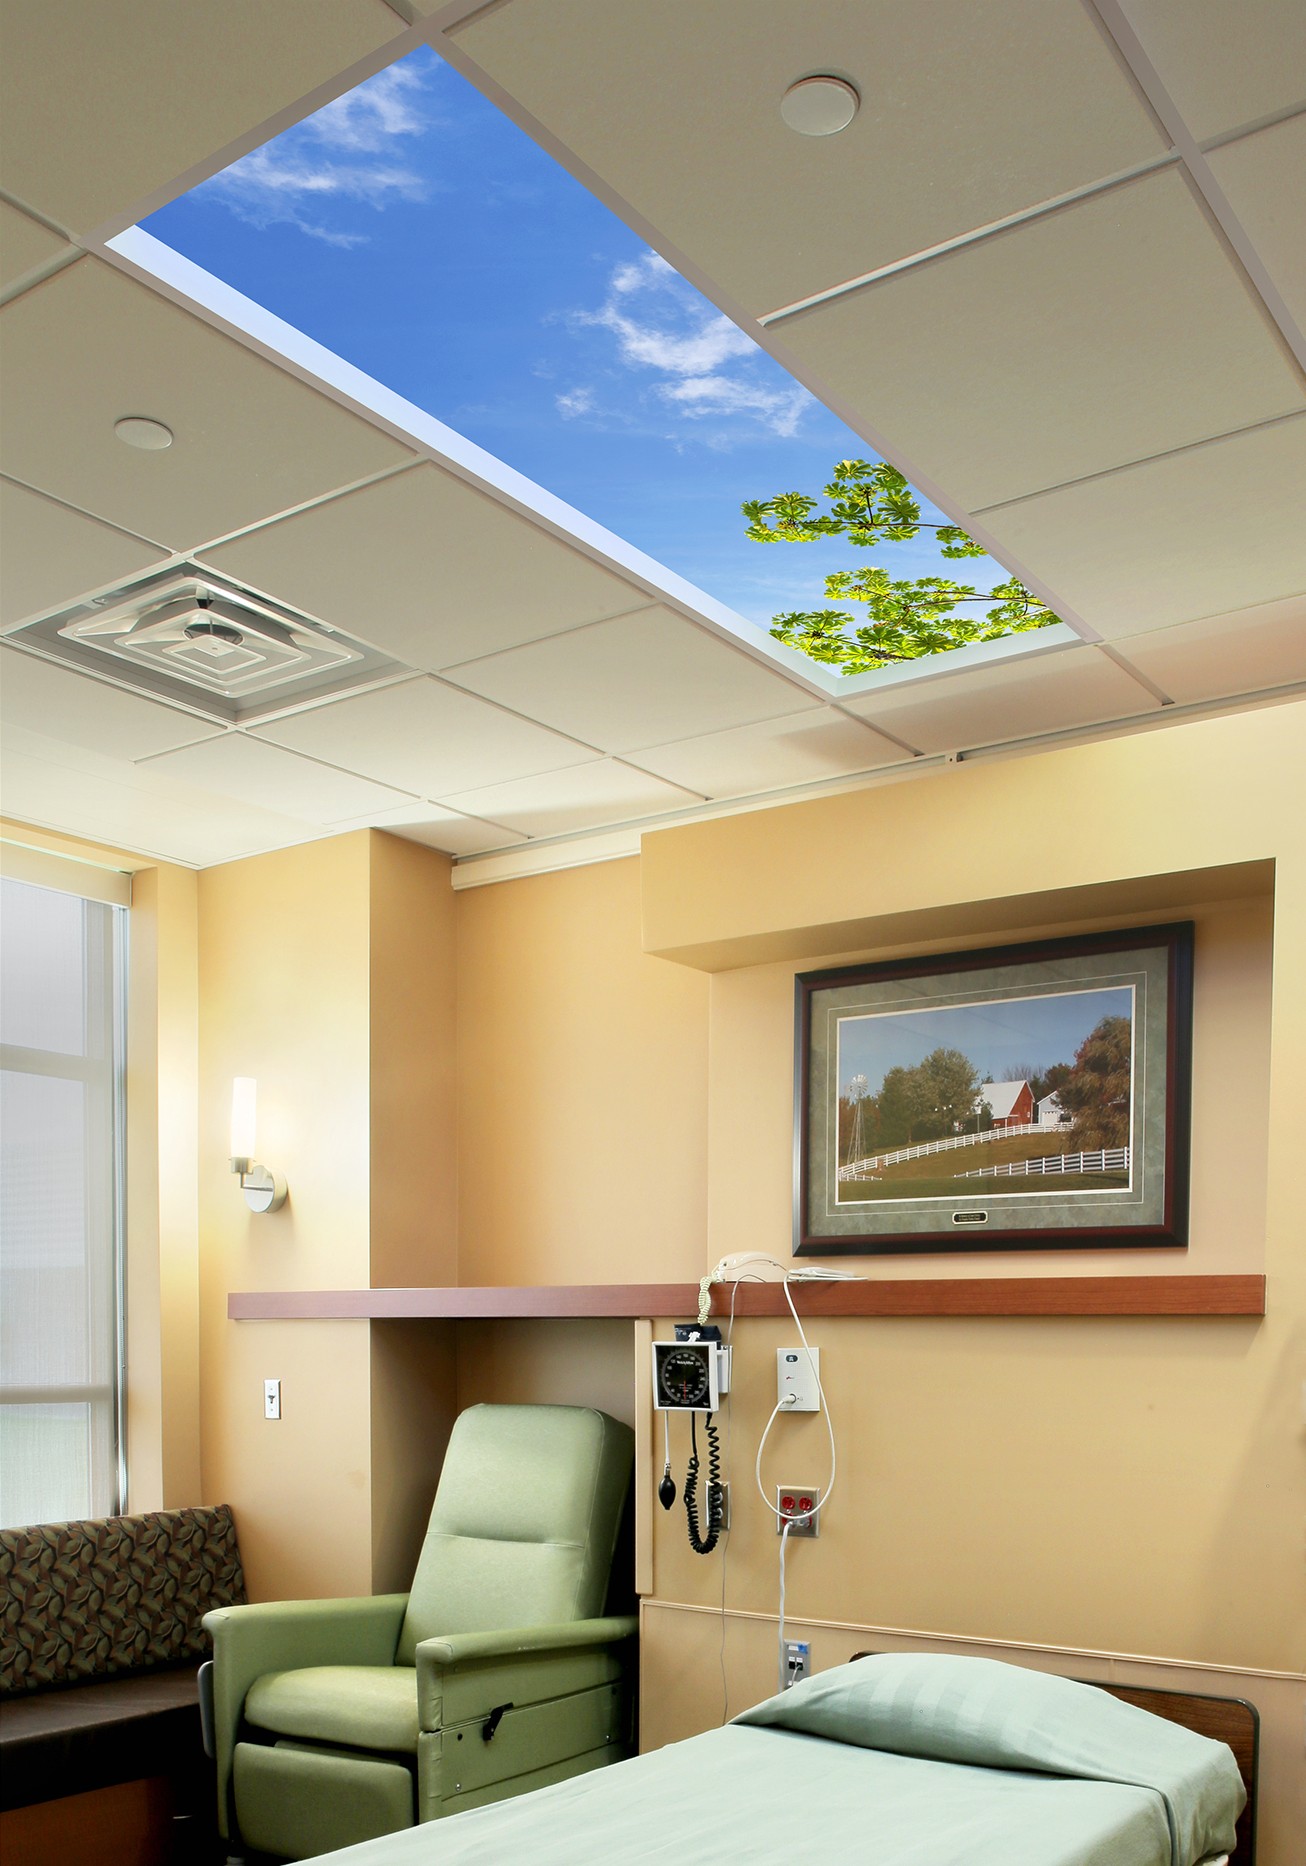 thiết kế giếng trời - Tiêu chuẩn thiết kế mới tại nhiều bệnh viện lớn